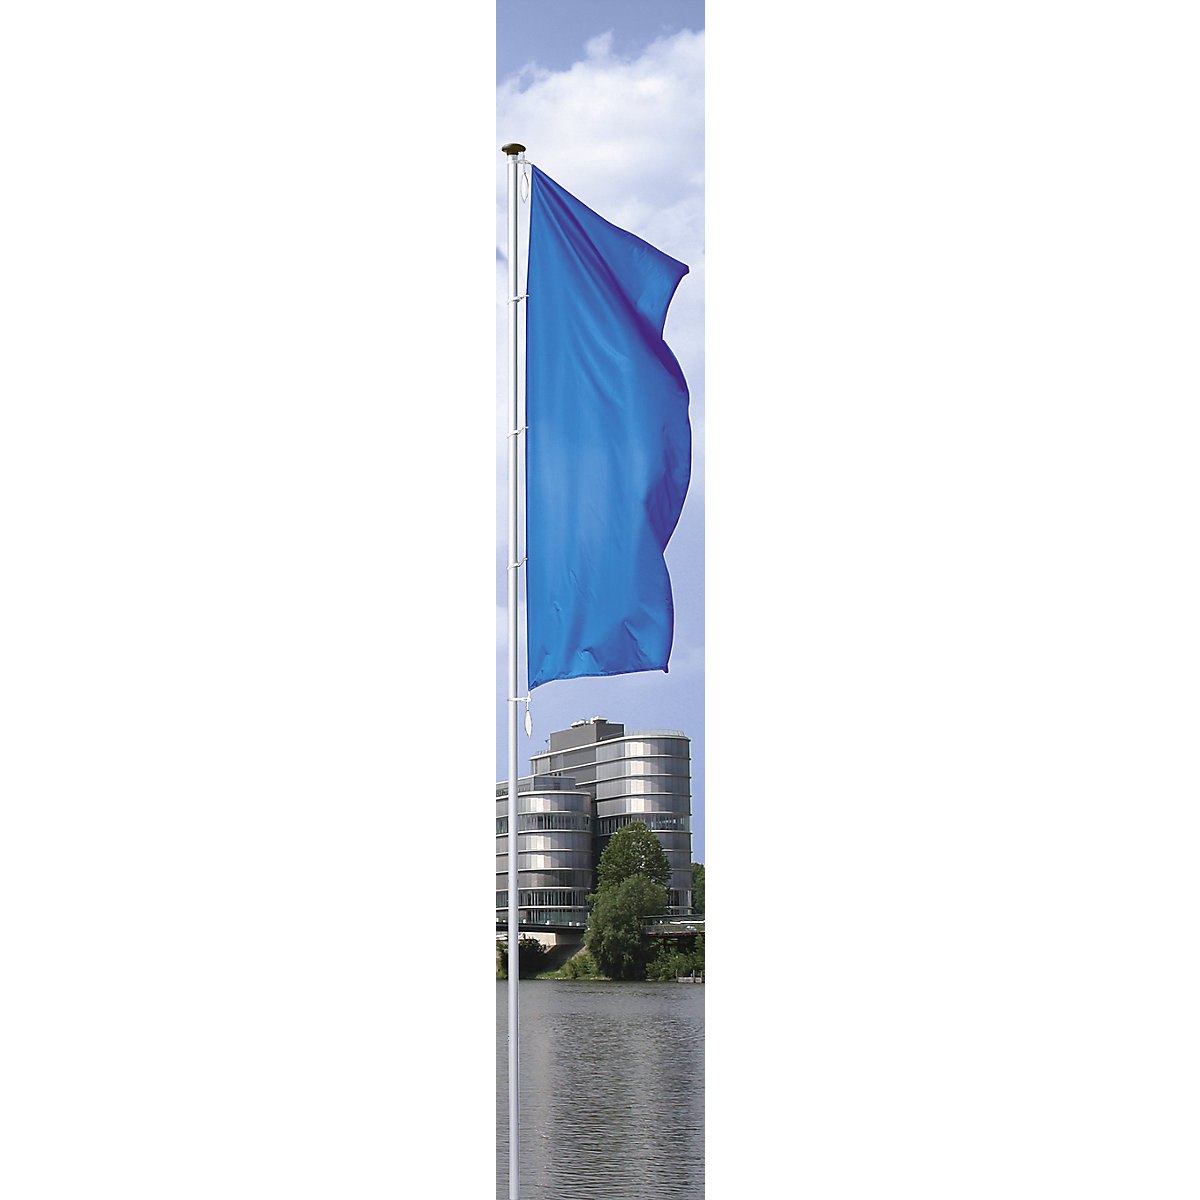 Mannus – Catarg din aluminiu pentru steaguri, PIRAT, fără braț, înălțime de la podea 8 m, Ø 100 mm